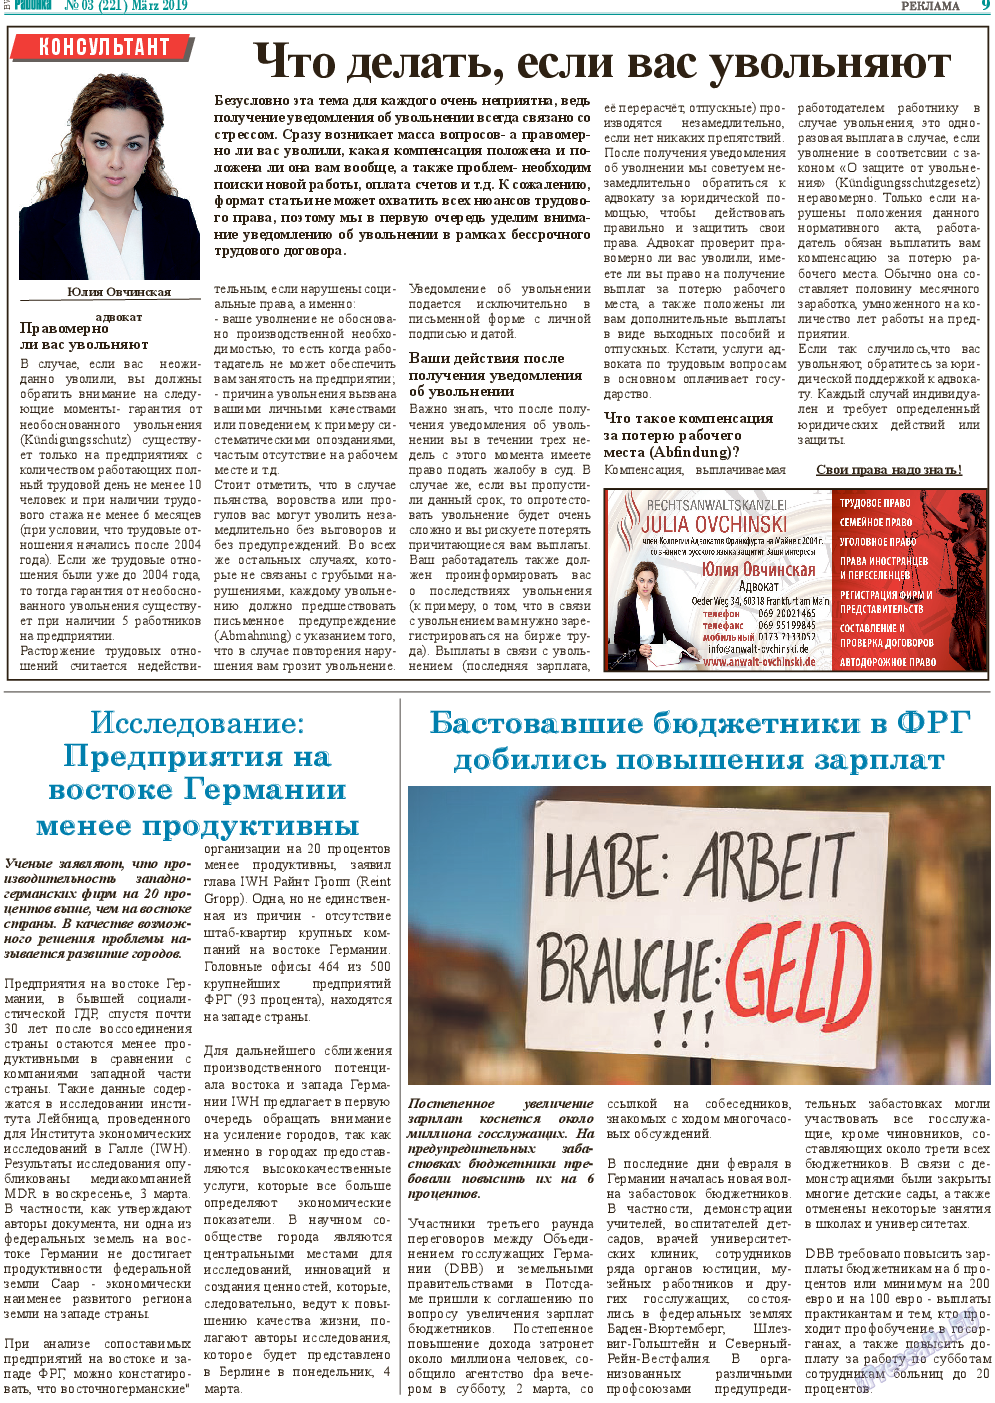 Районка-Süd-West, газета. 2019 №3 стр.9